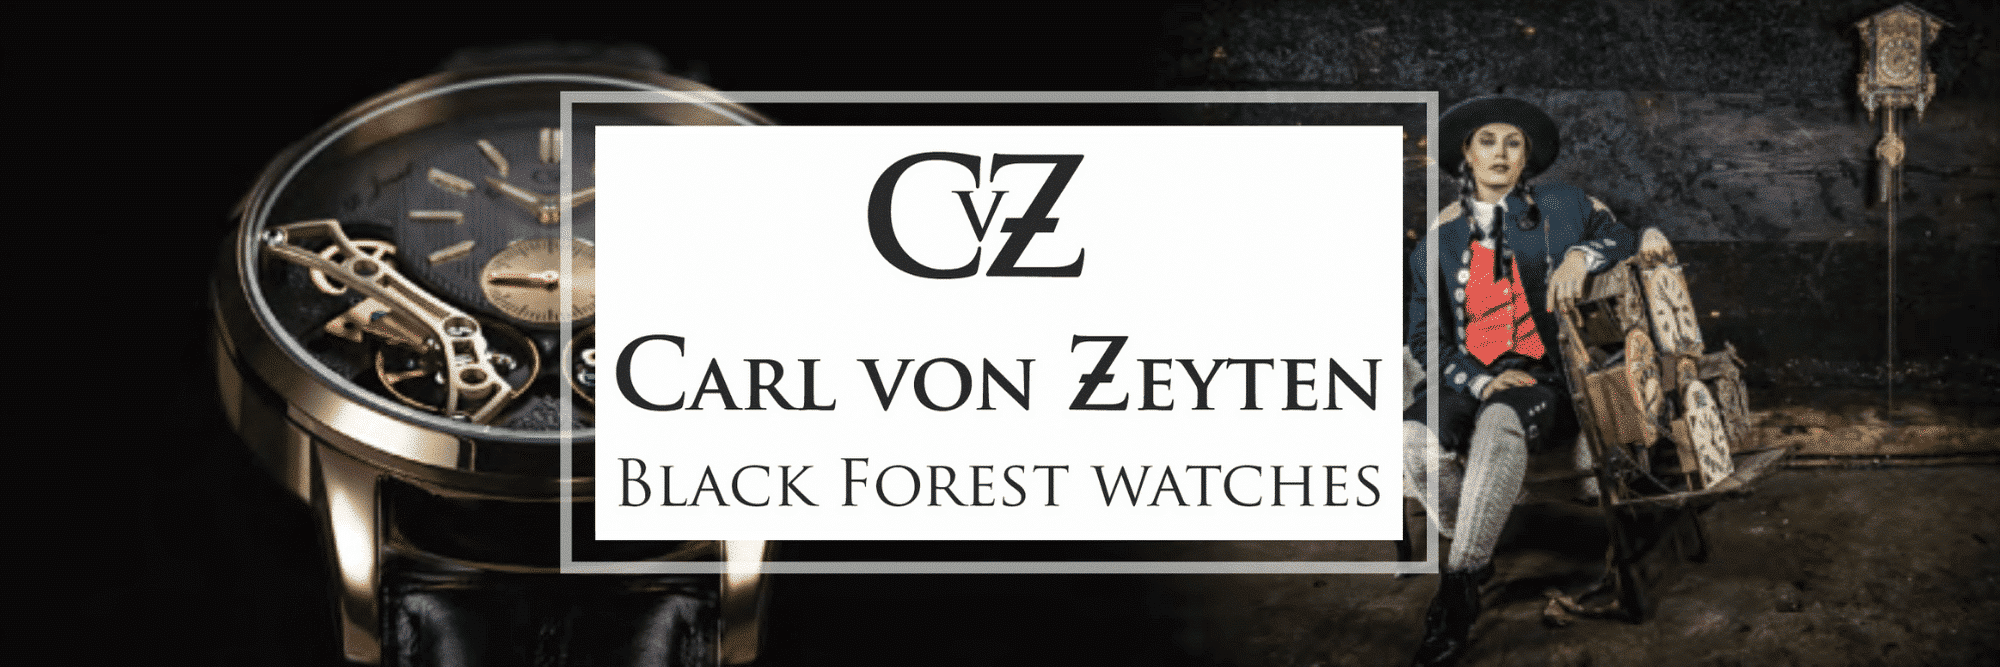 Carl Von Zeyten Black Forest Watches